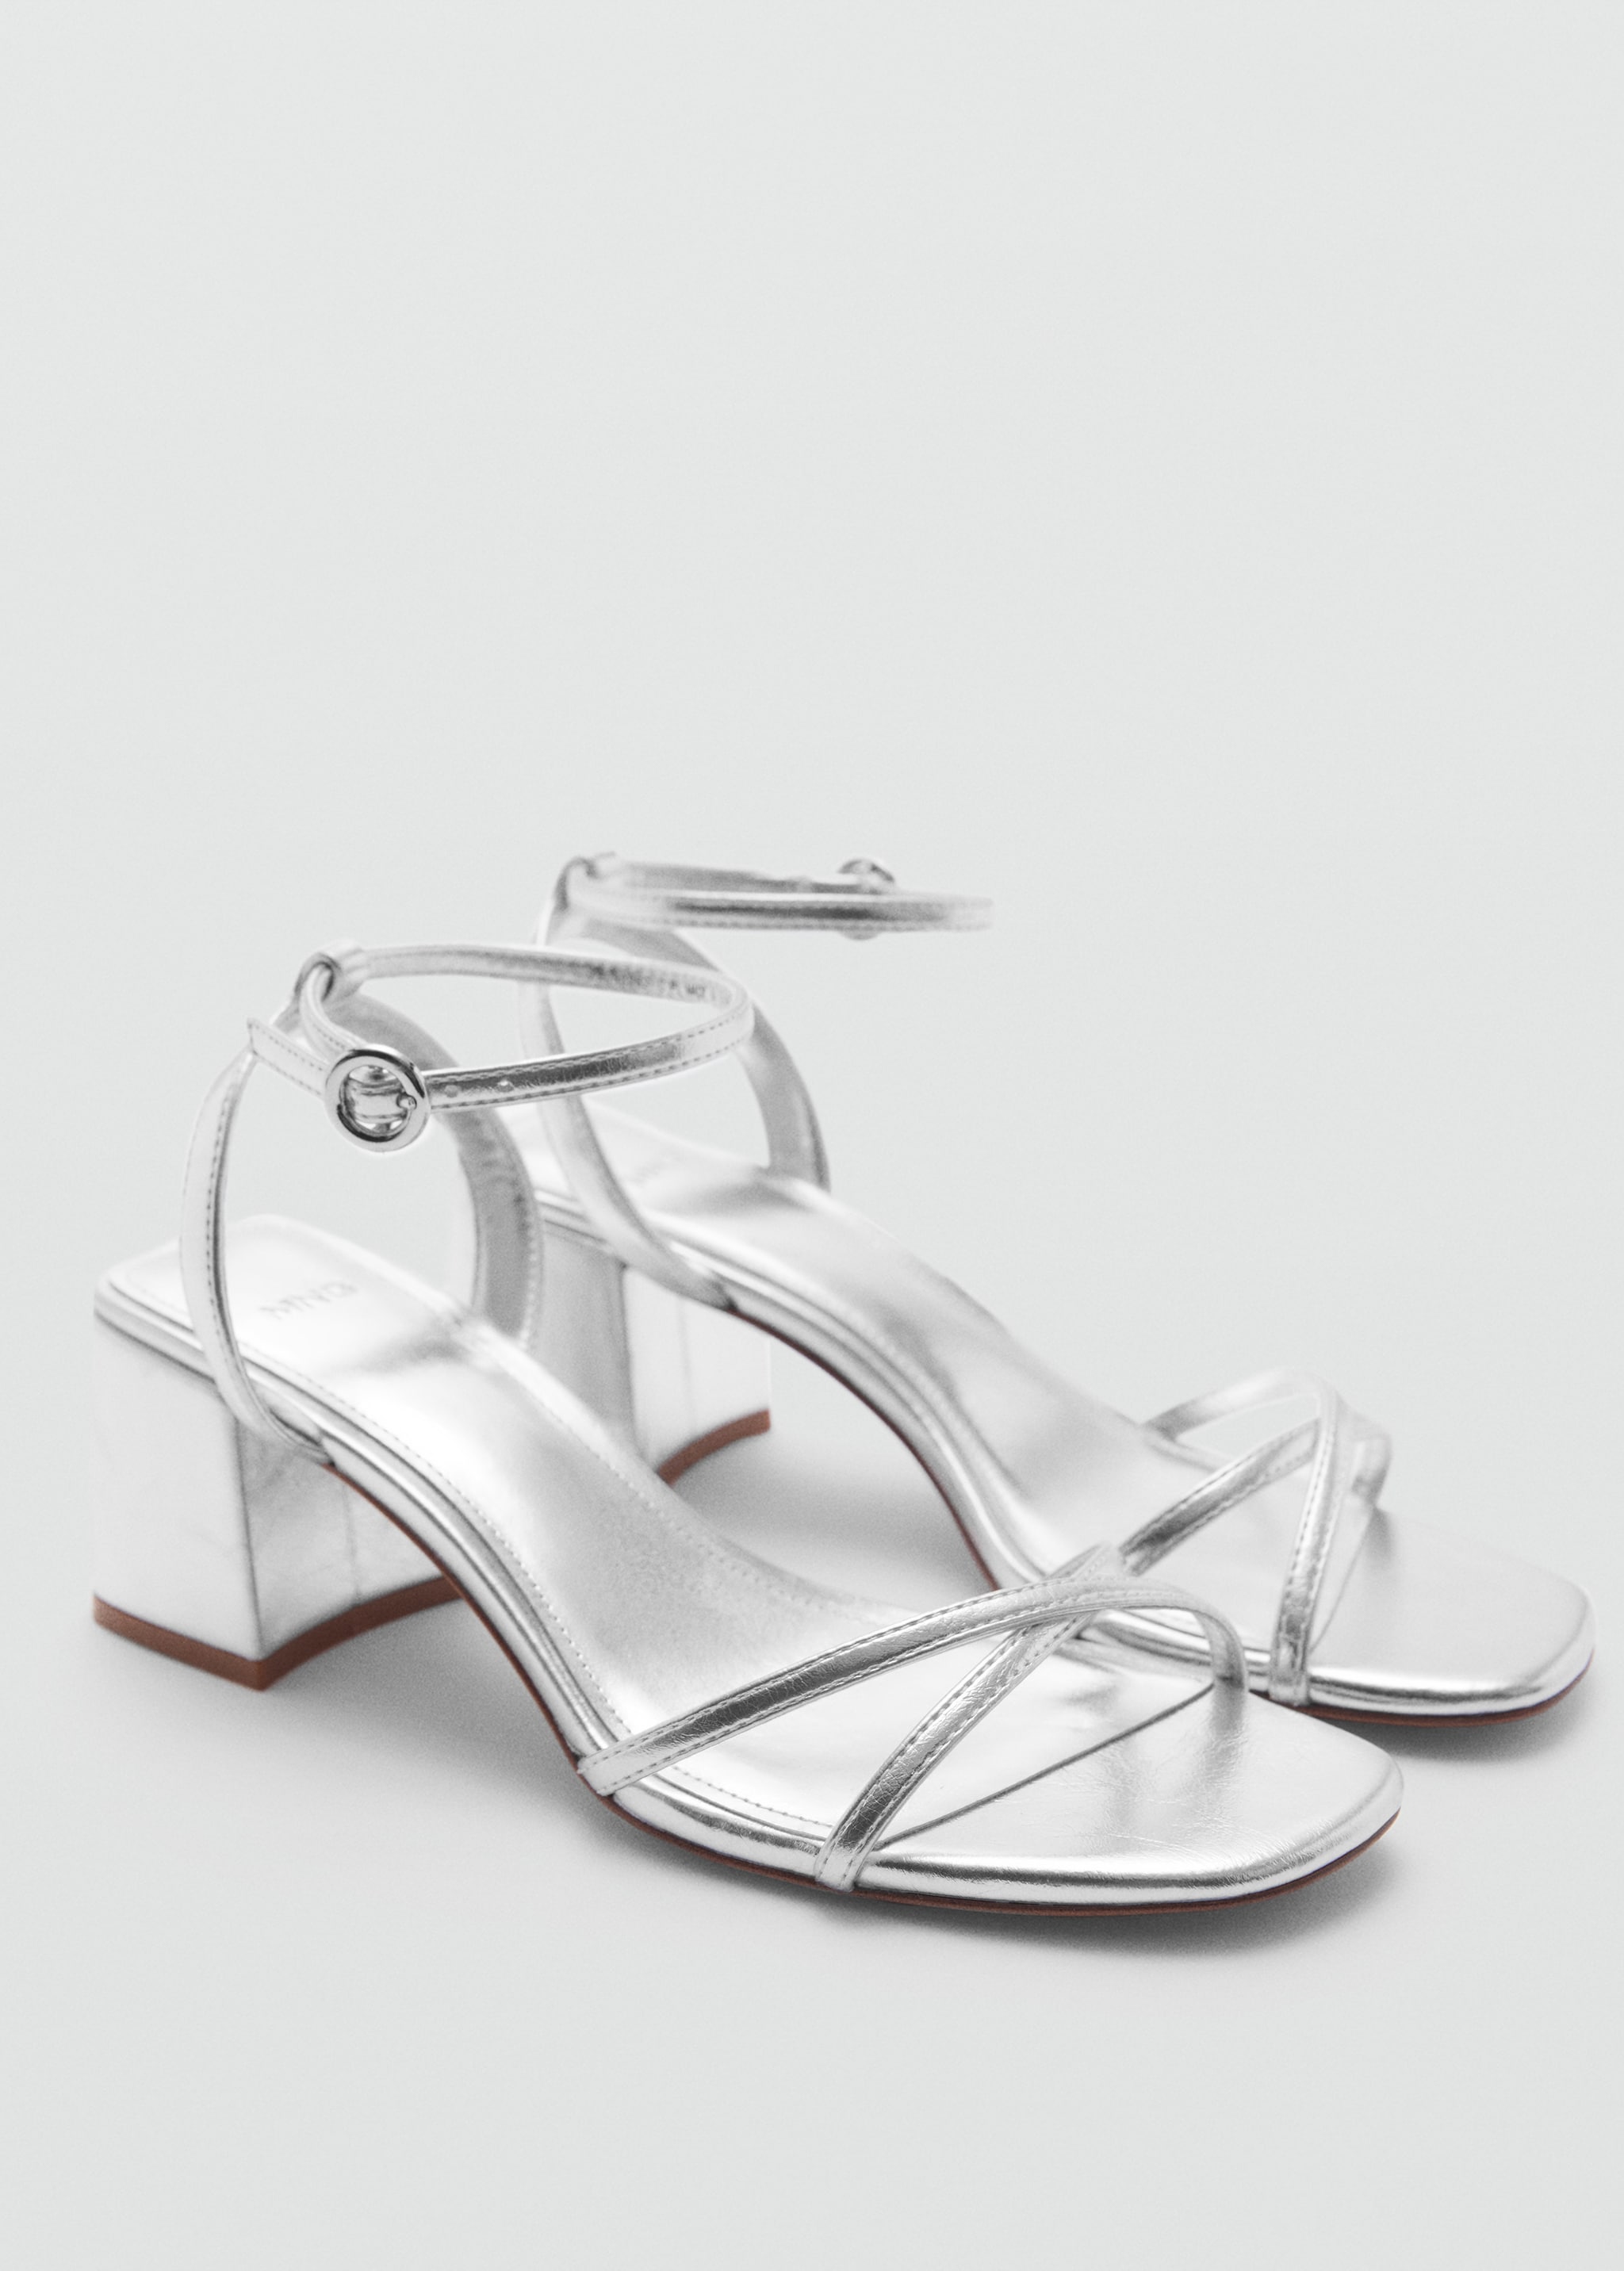 Metallic strap sandals - Medium plane